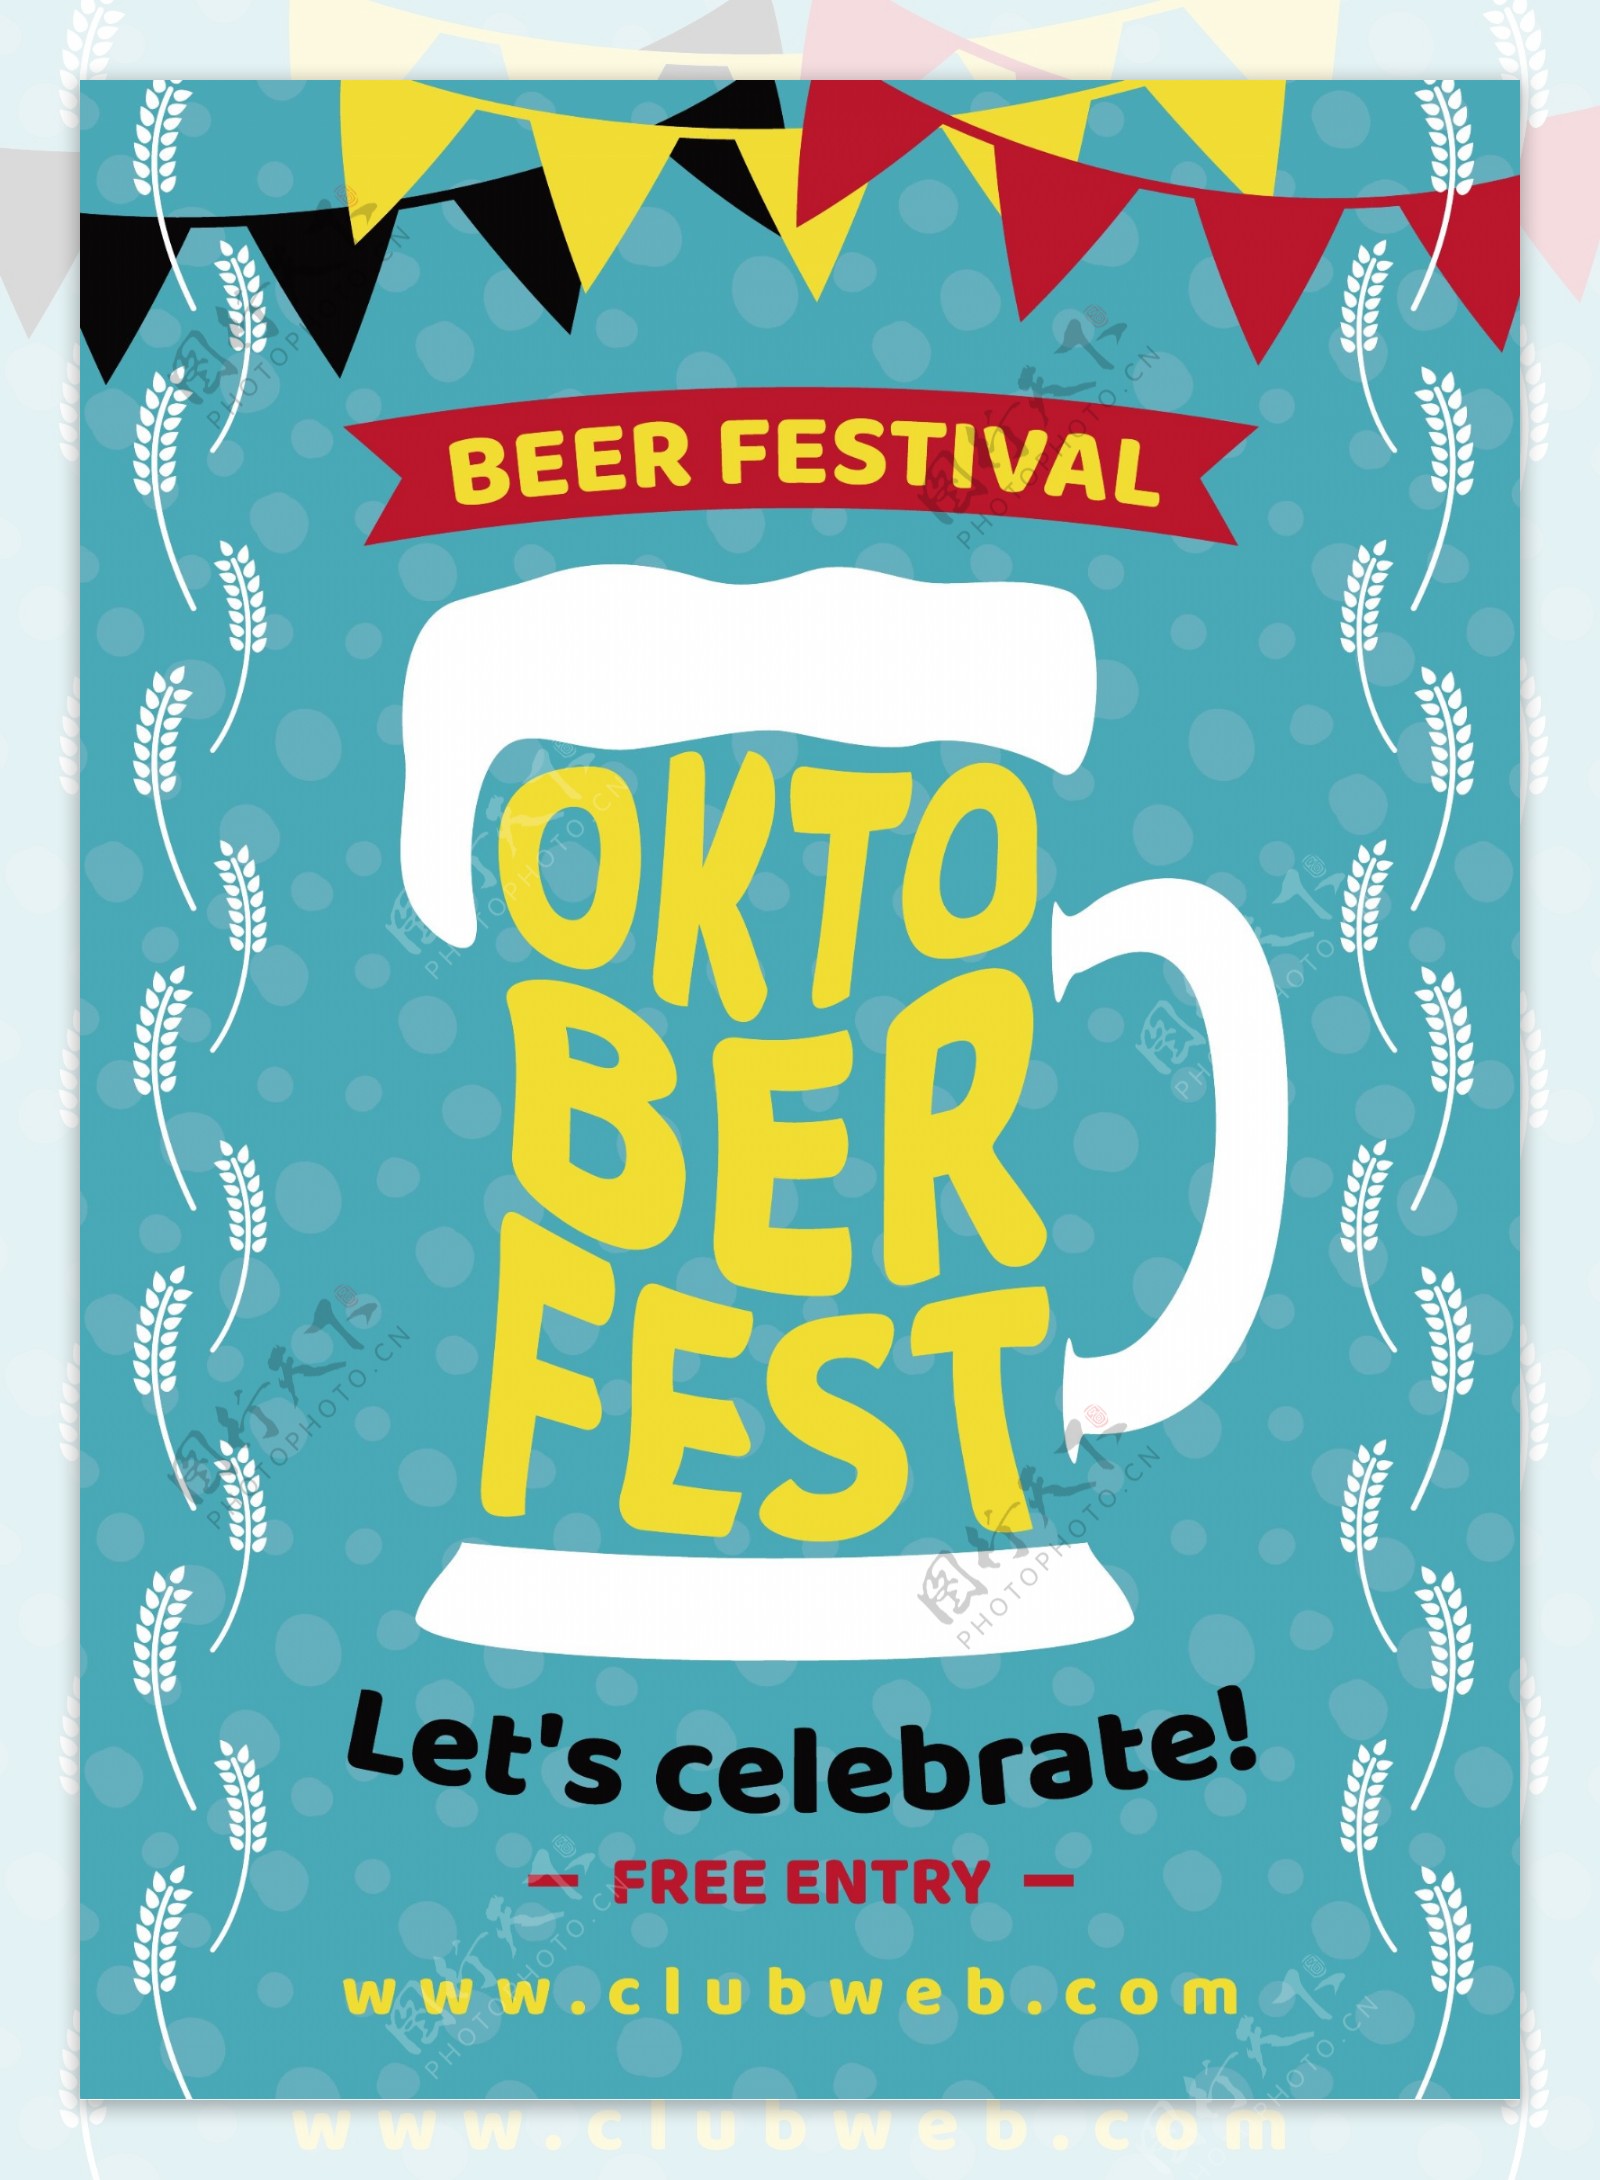 啤酒节的海报和一个啤酒杯